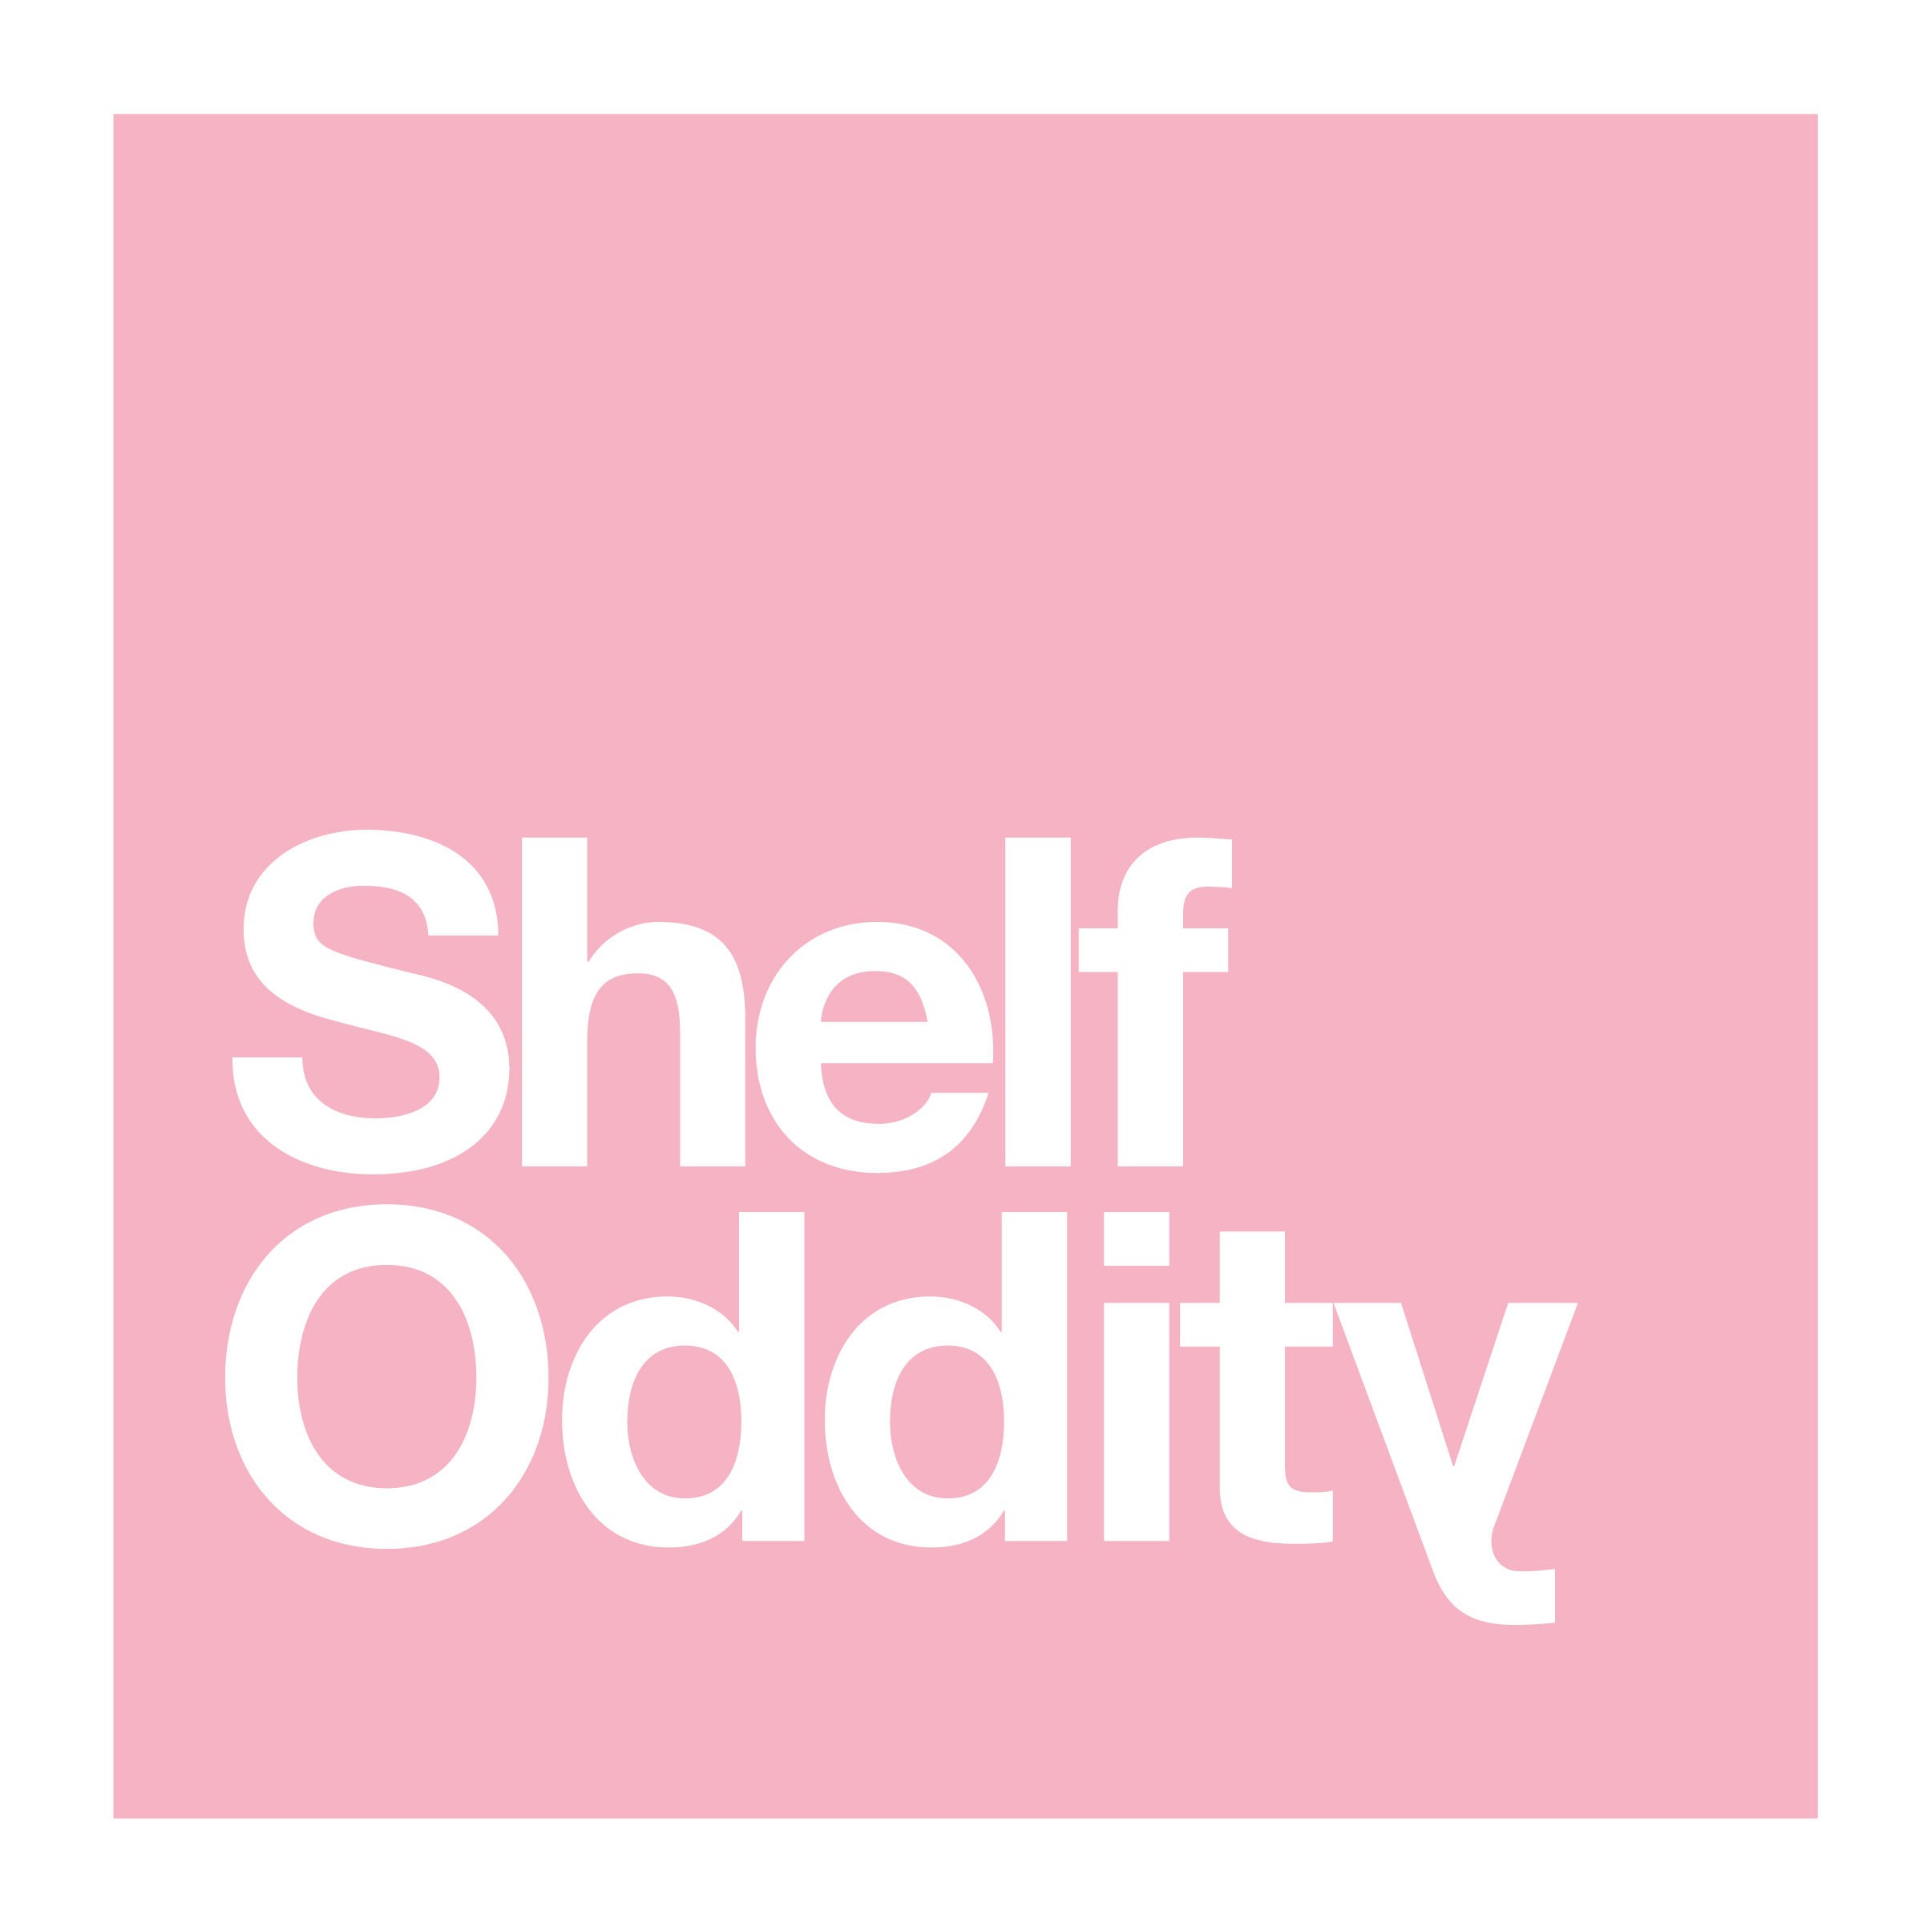 Shelf Oddity